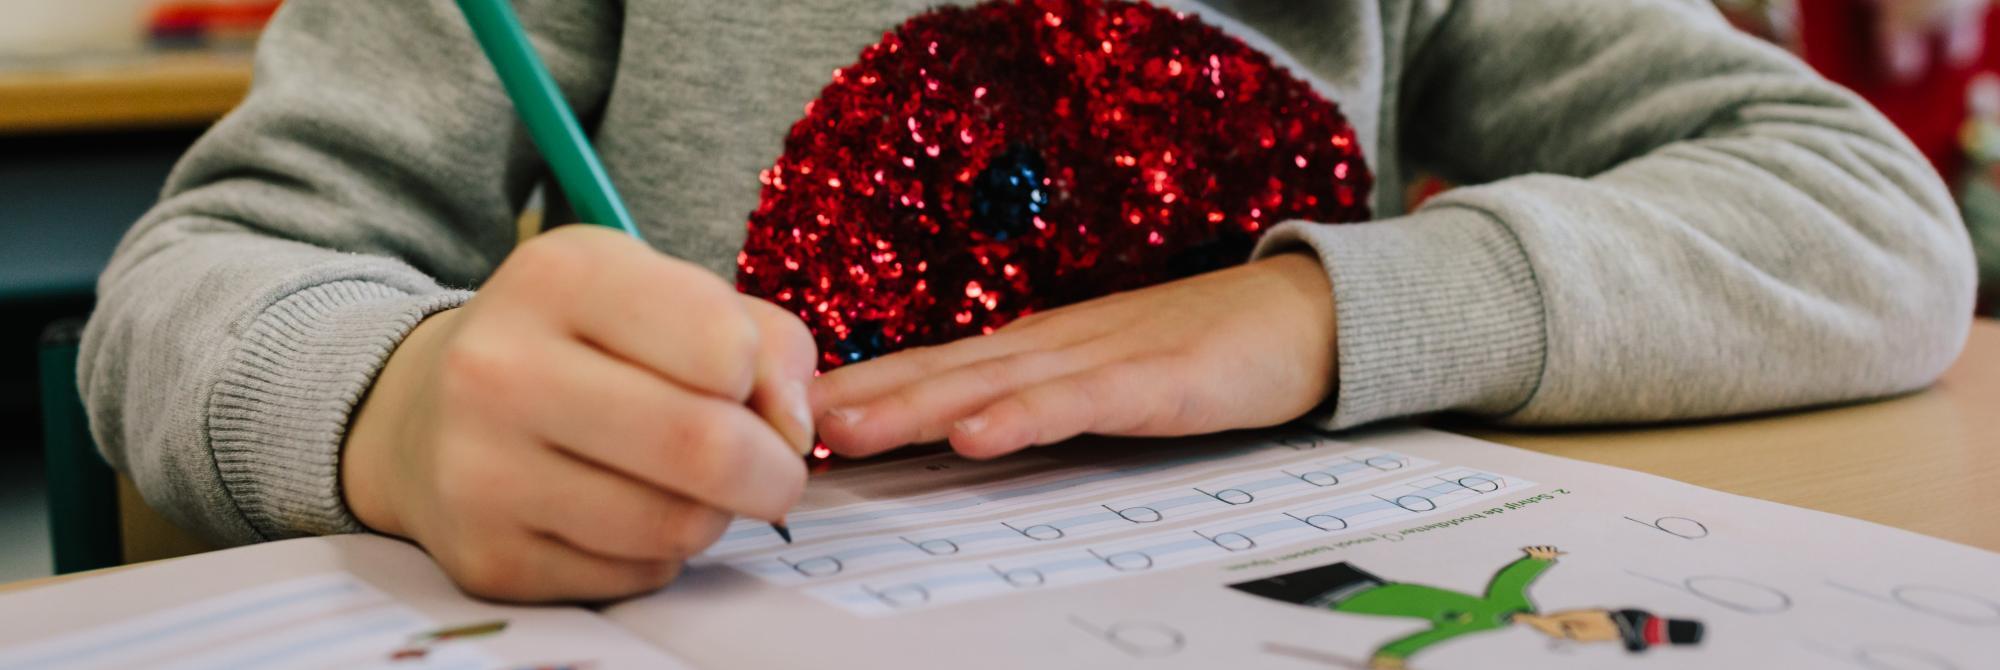 Kind oefent met schrijven van hoofdletter Q